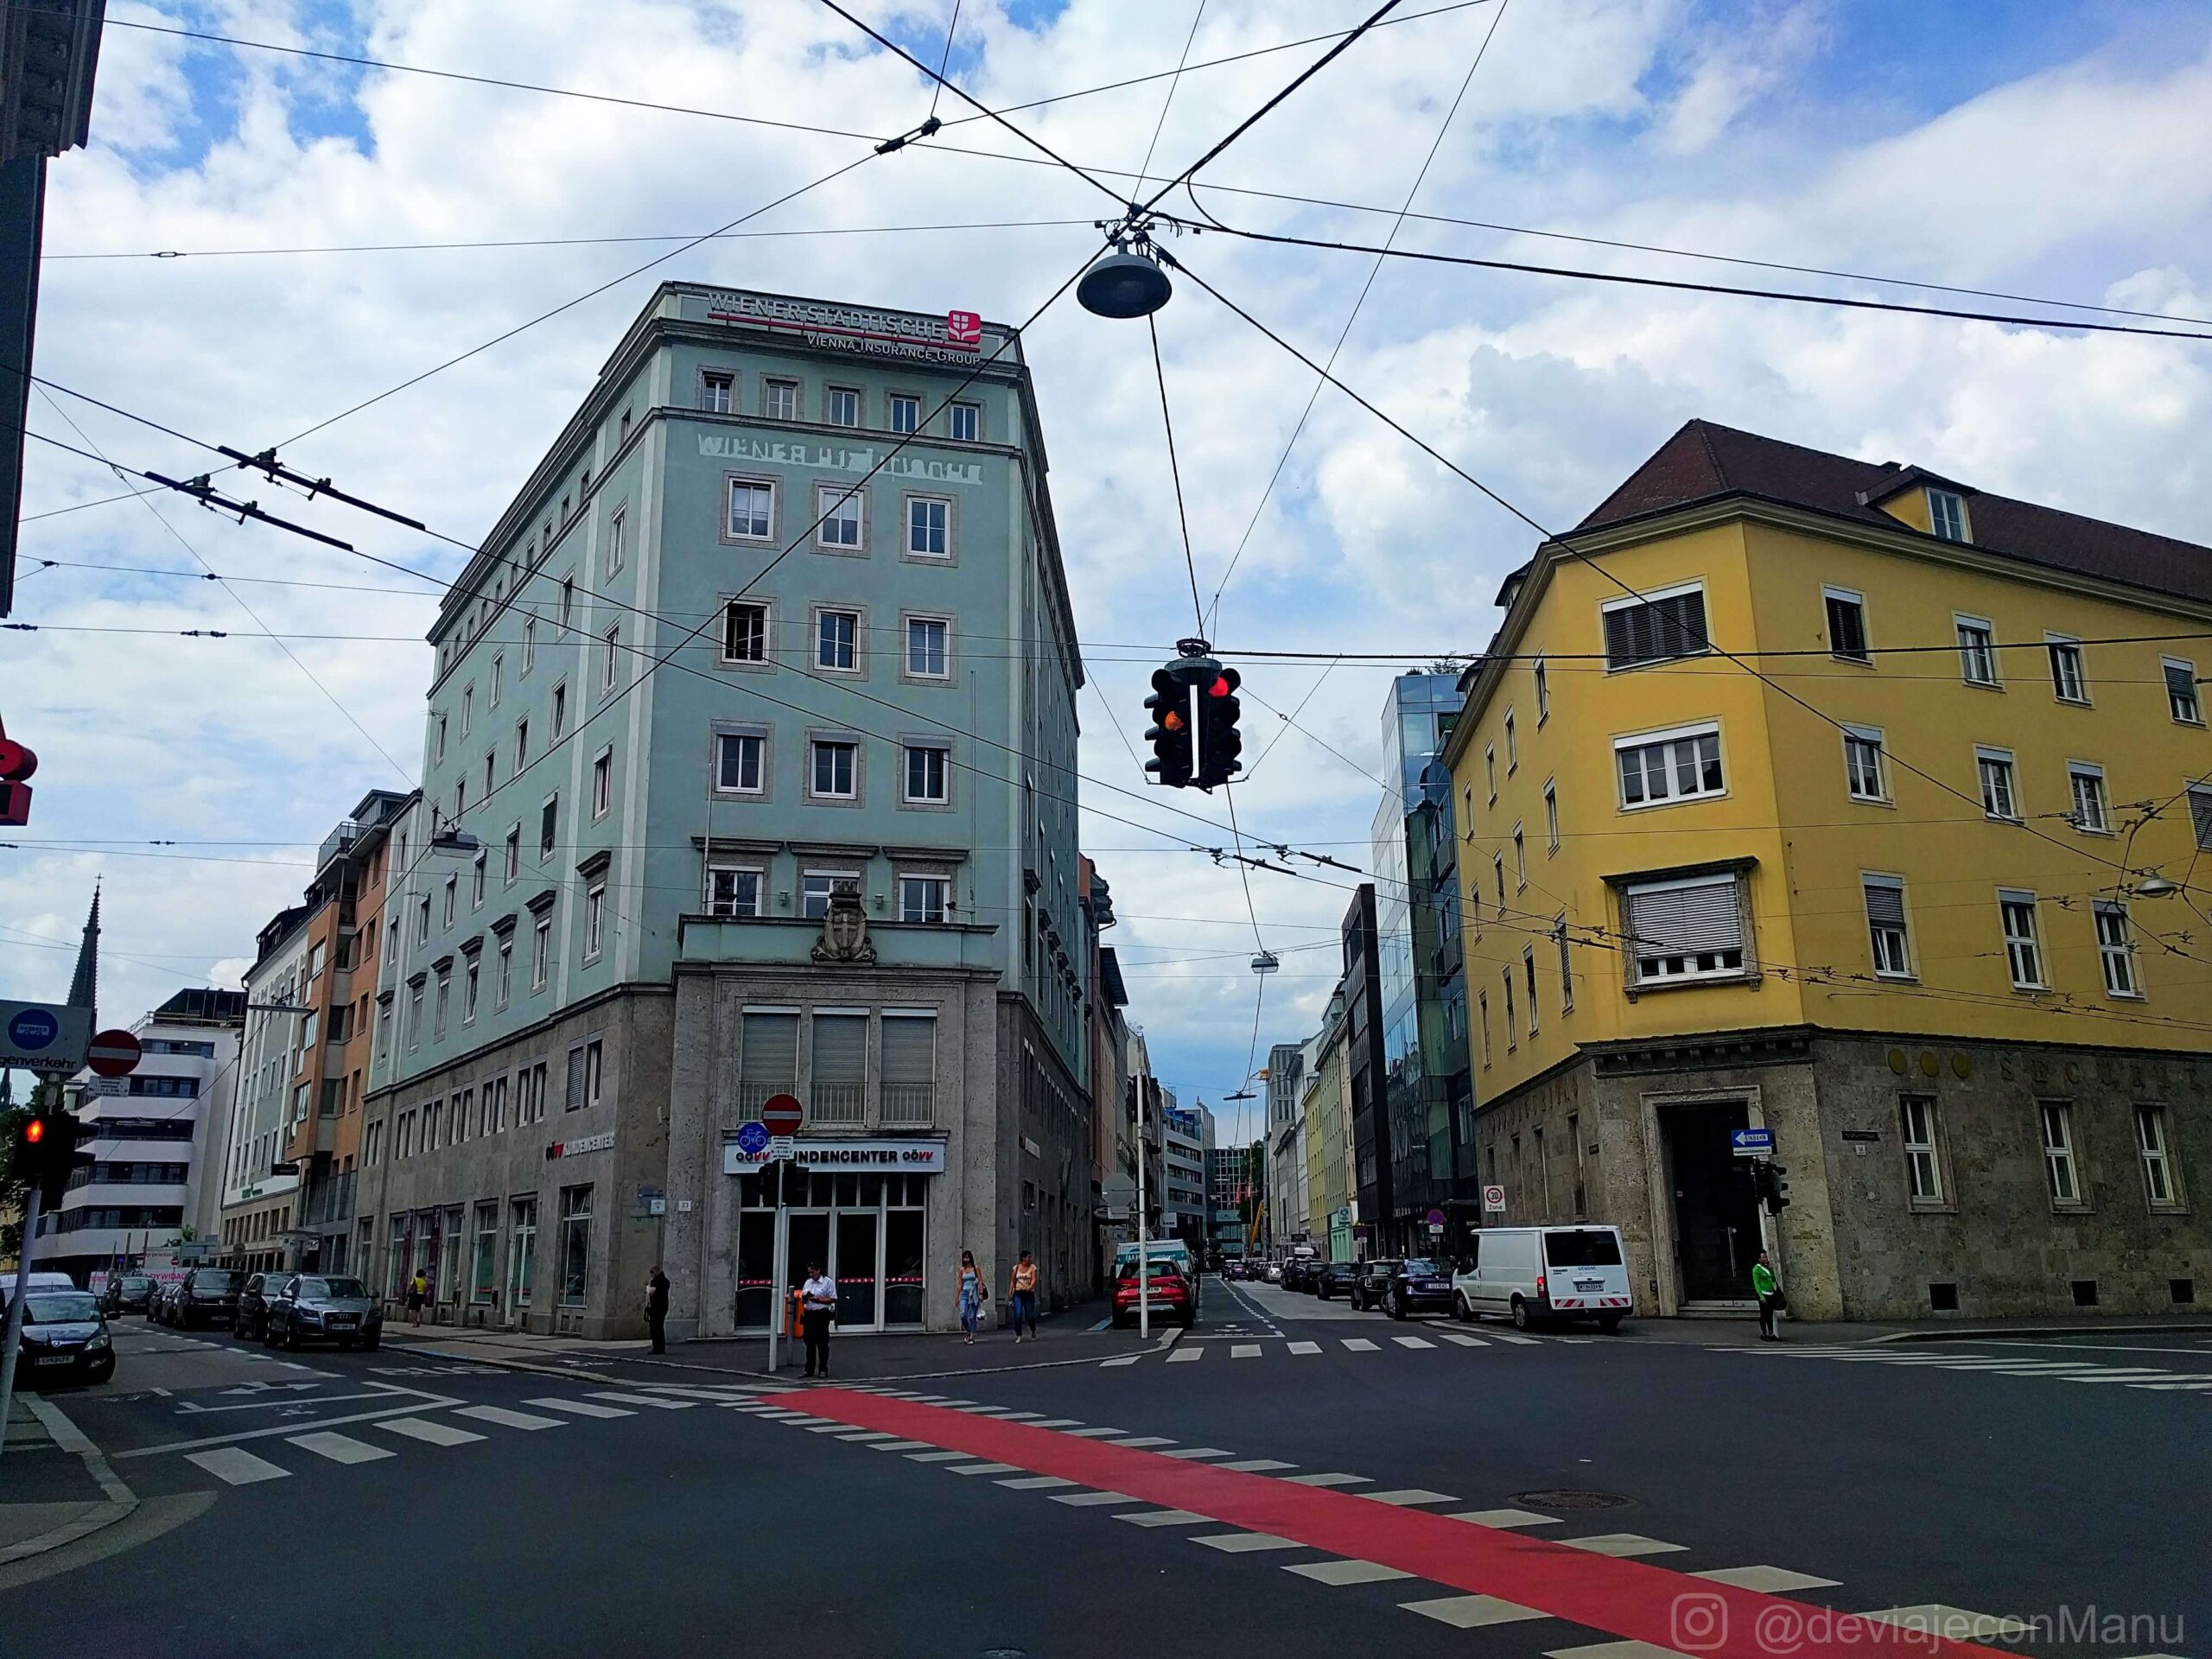 Ciudad Linz